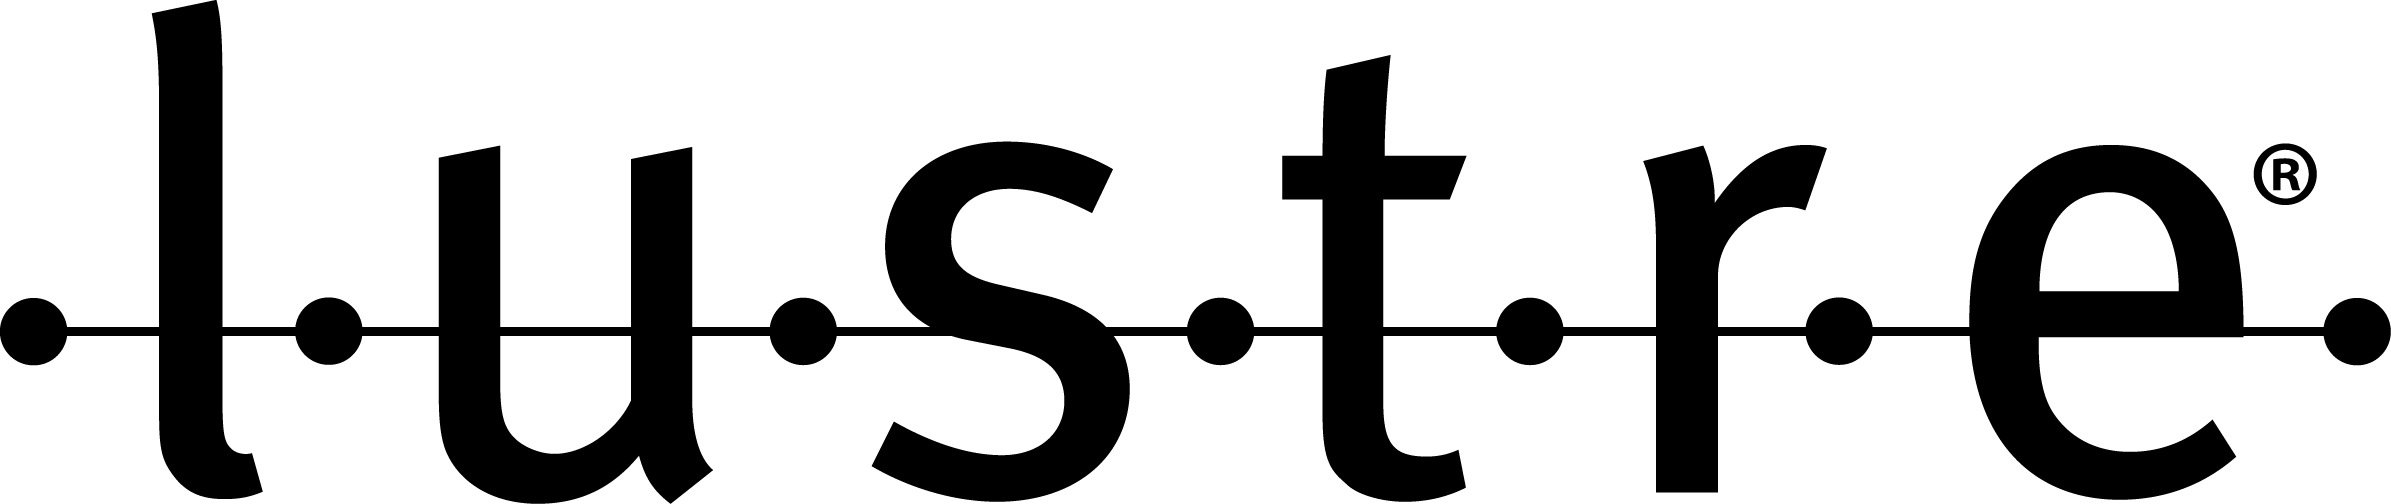 Lustre_file_system_logo